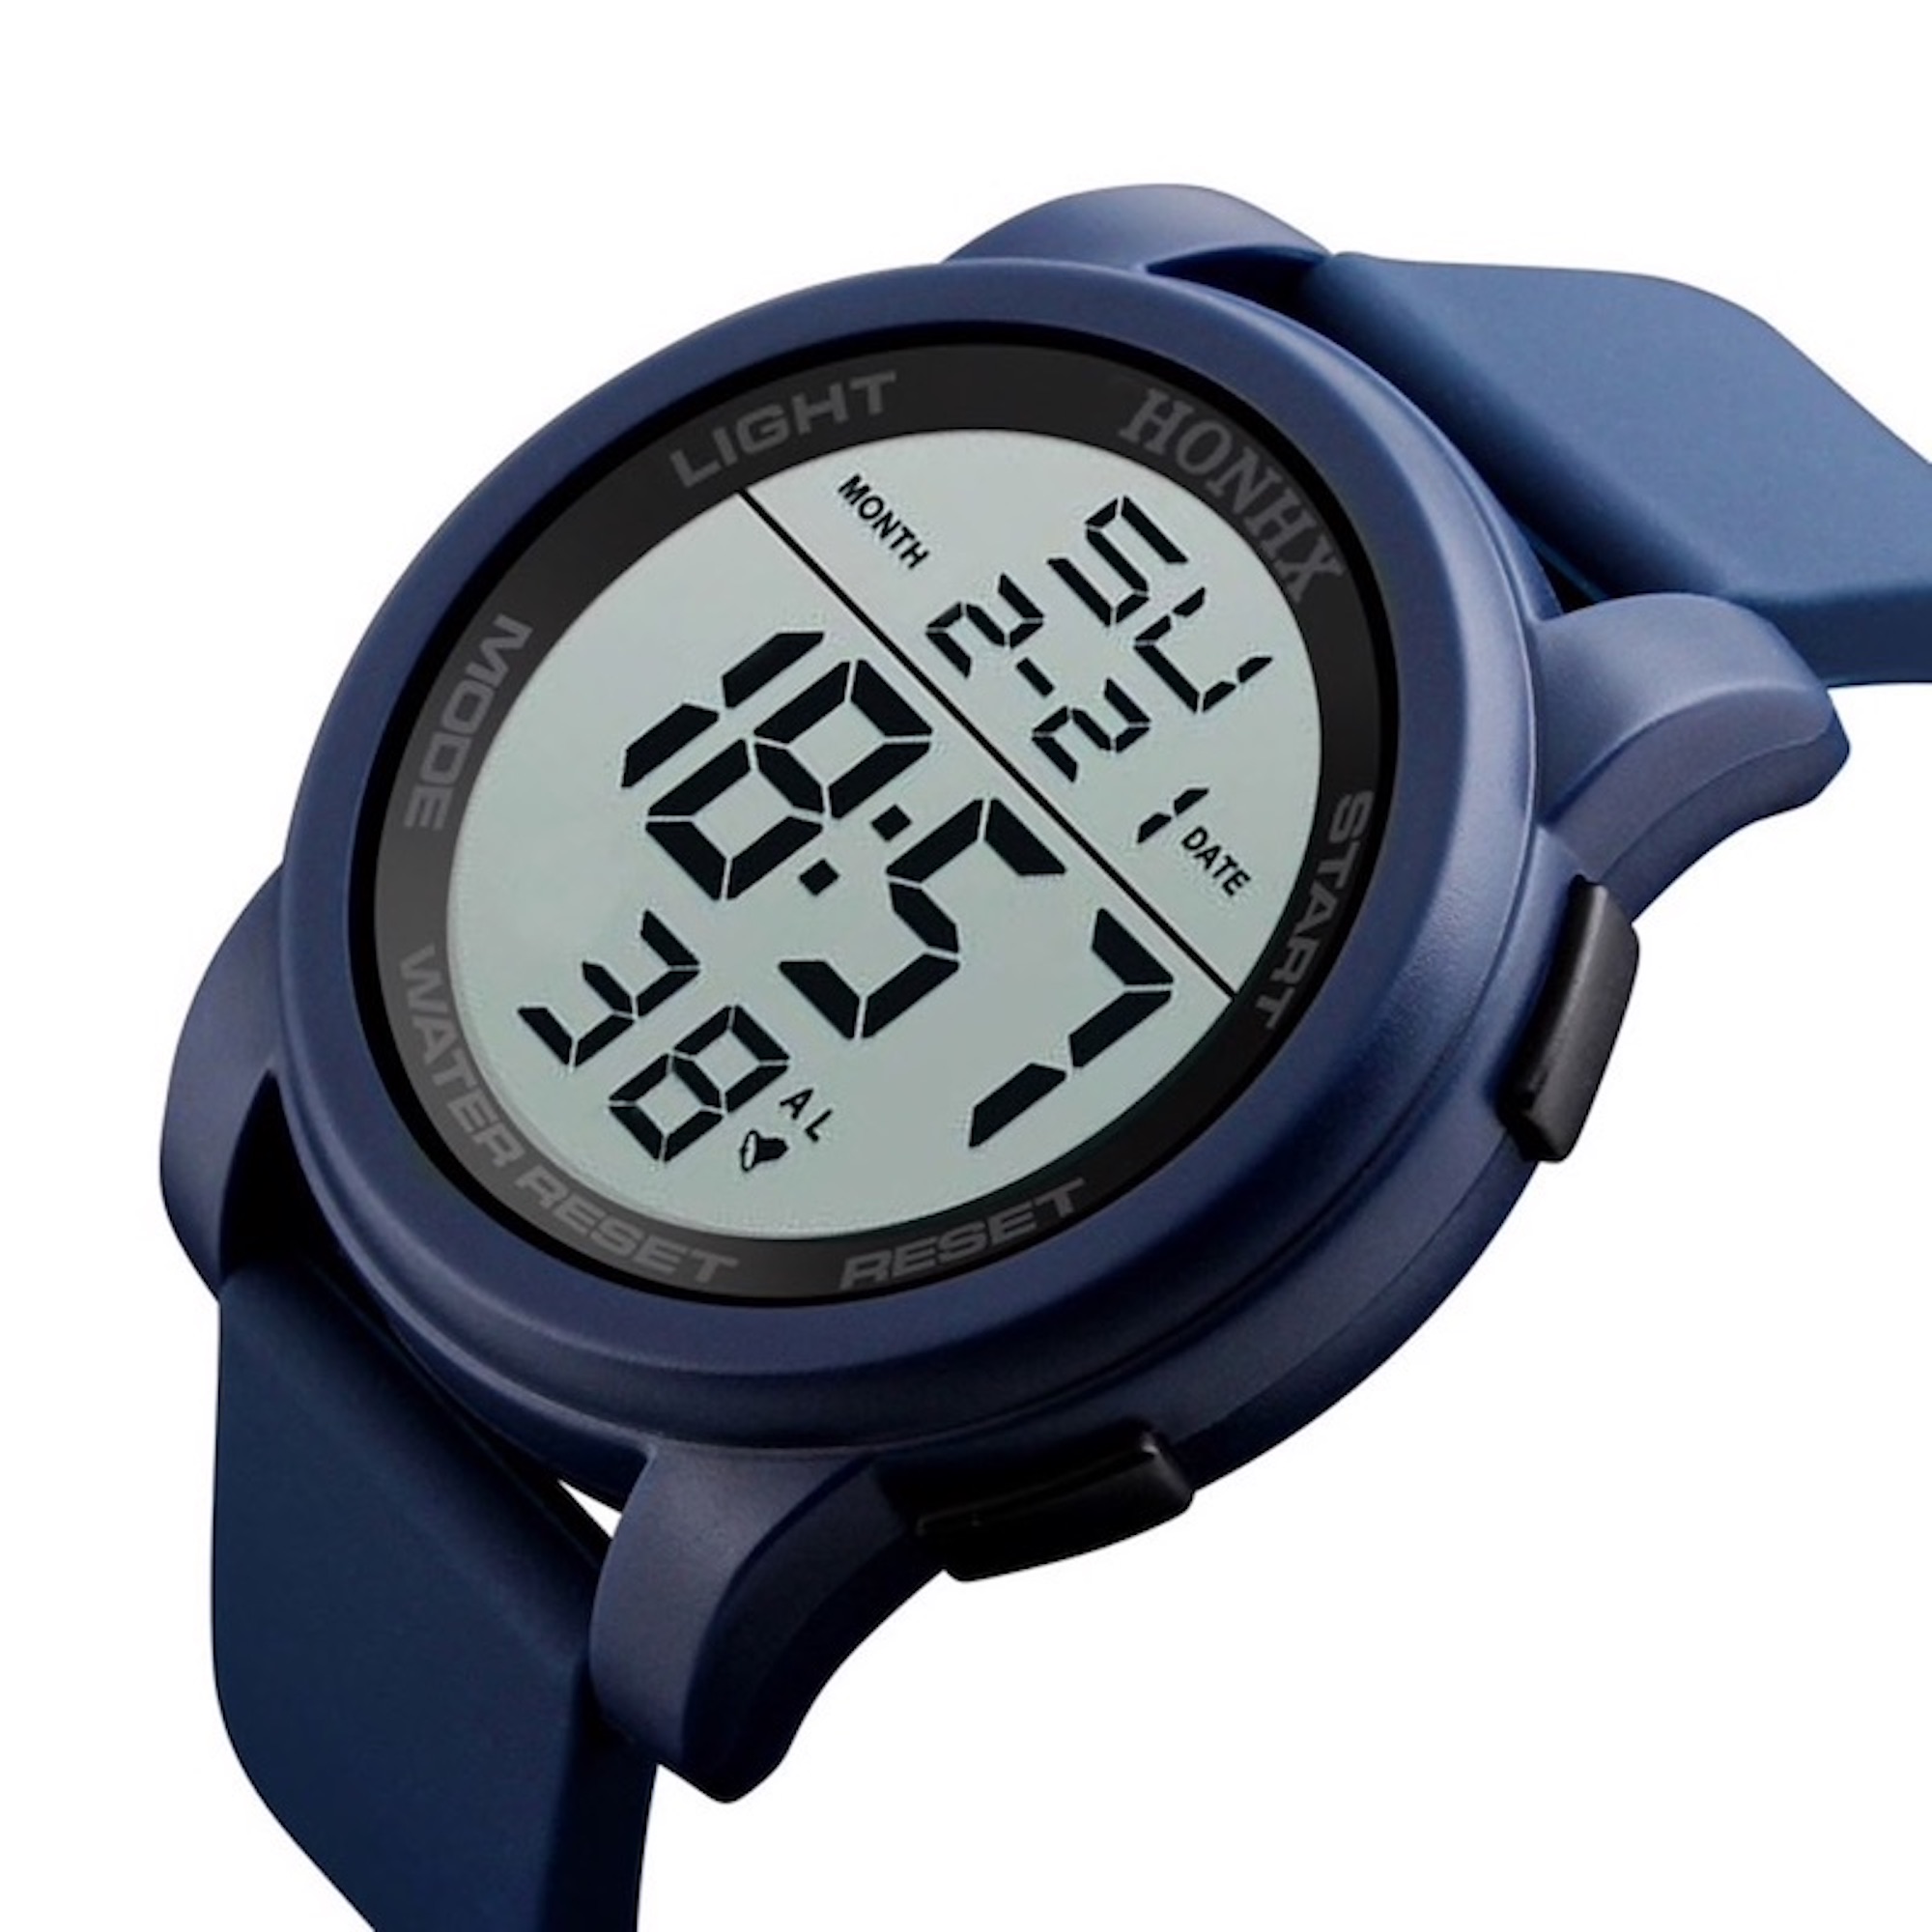 Methold Reloj deportivo digital para hombre, pantalla dual, relojes  deportivos para exteriores, relo Methold